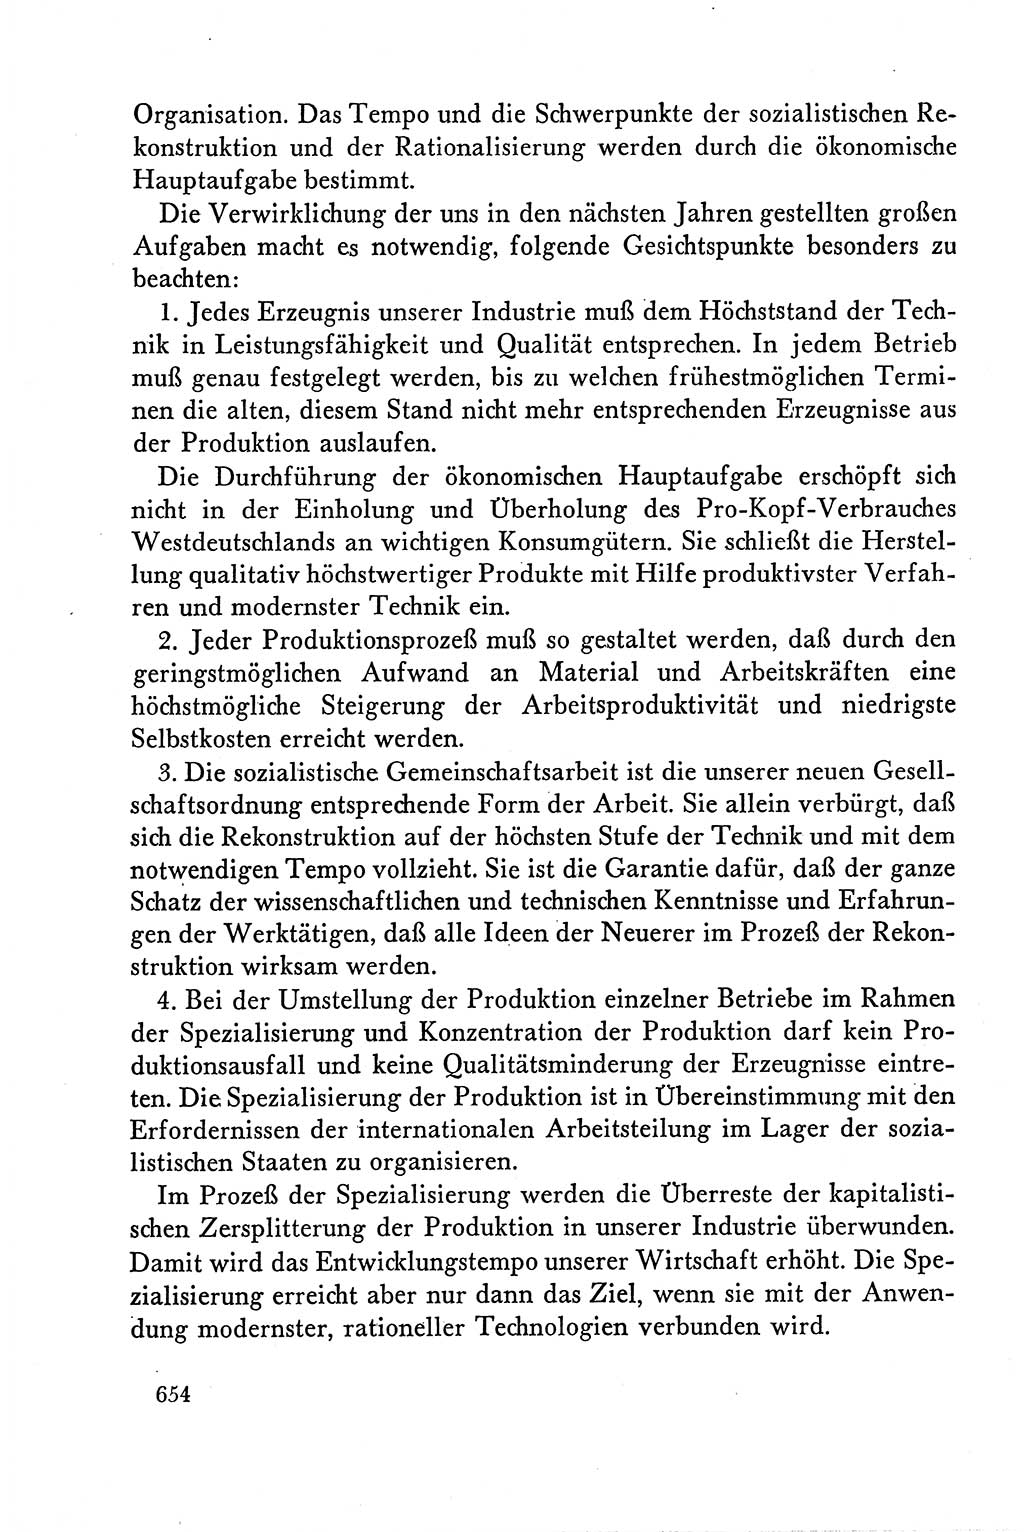 Dokumente der Sozialistischen Einheitspartei Deutschlands (SED) [Deutsche Demokratische Republik (DDR)] 1958-1959, Seite 654 (Dok. SED DDR 1958-1959, S. 654)